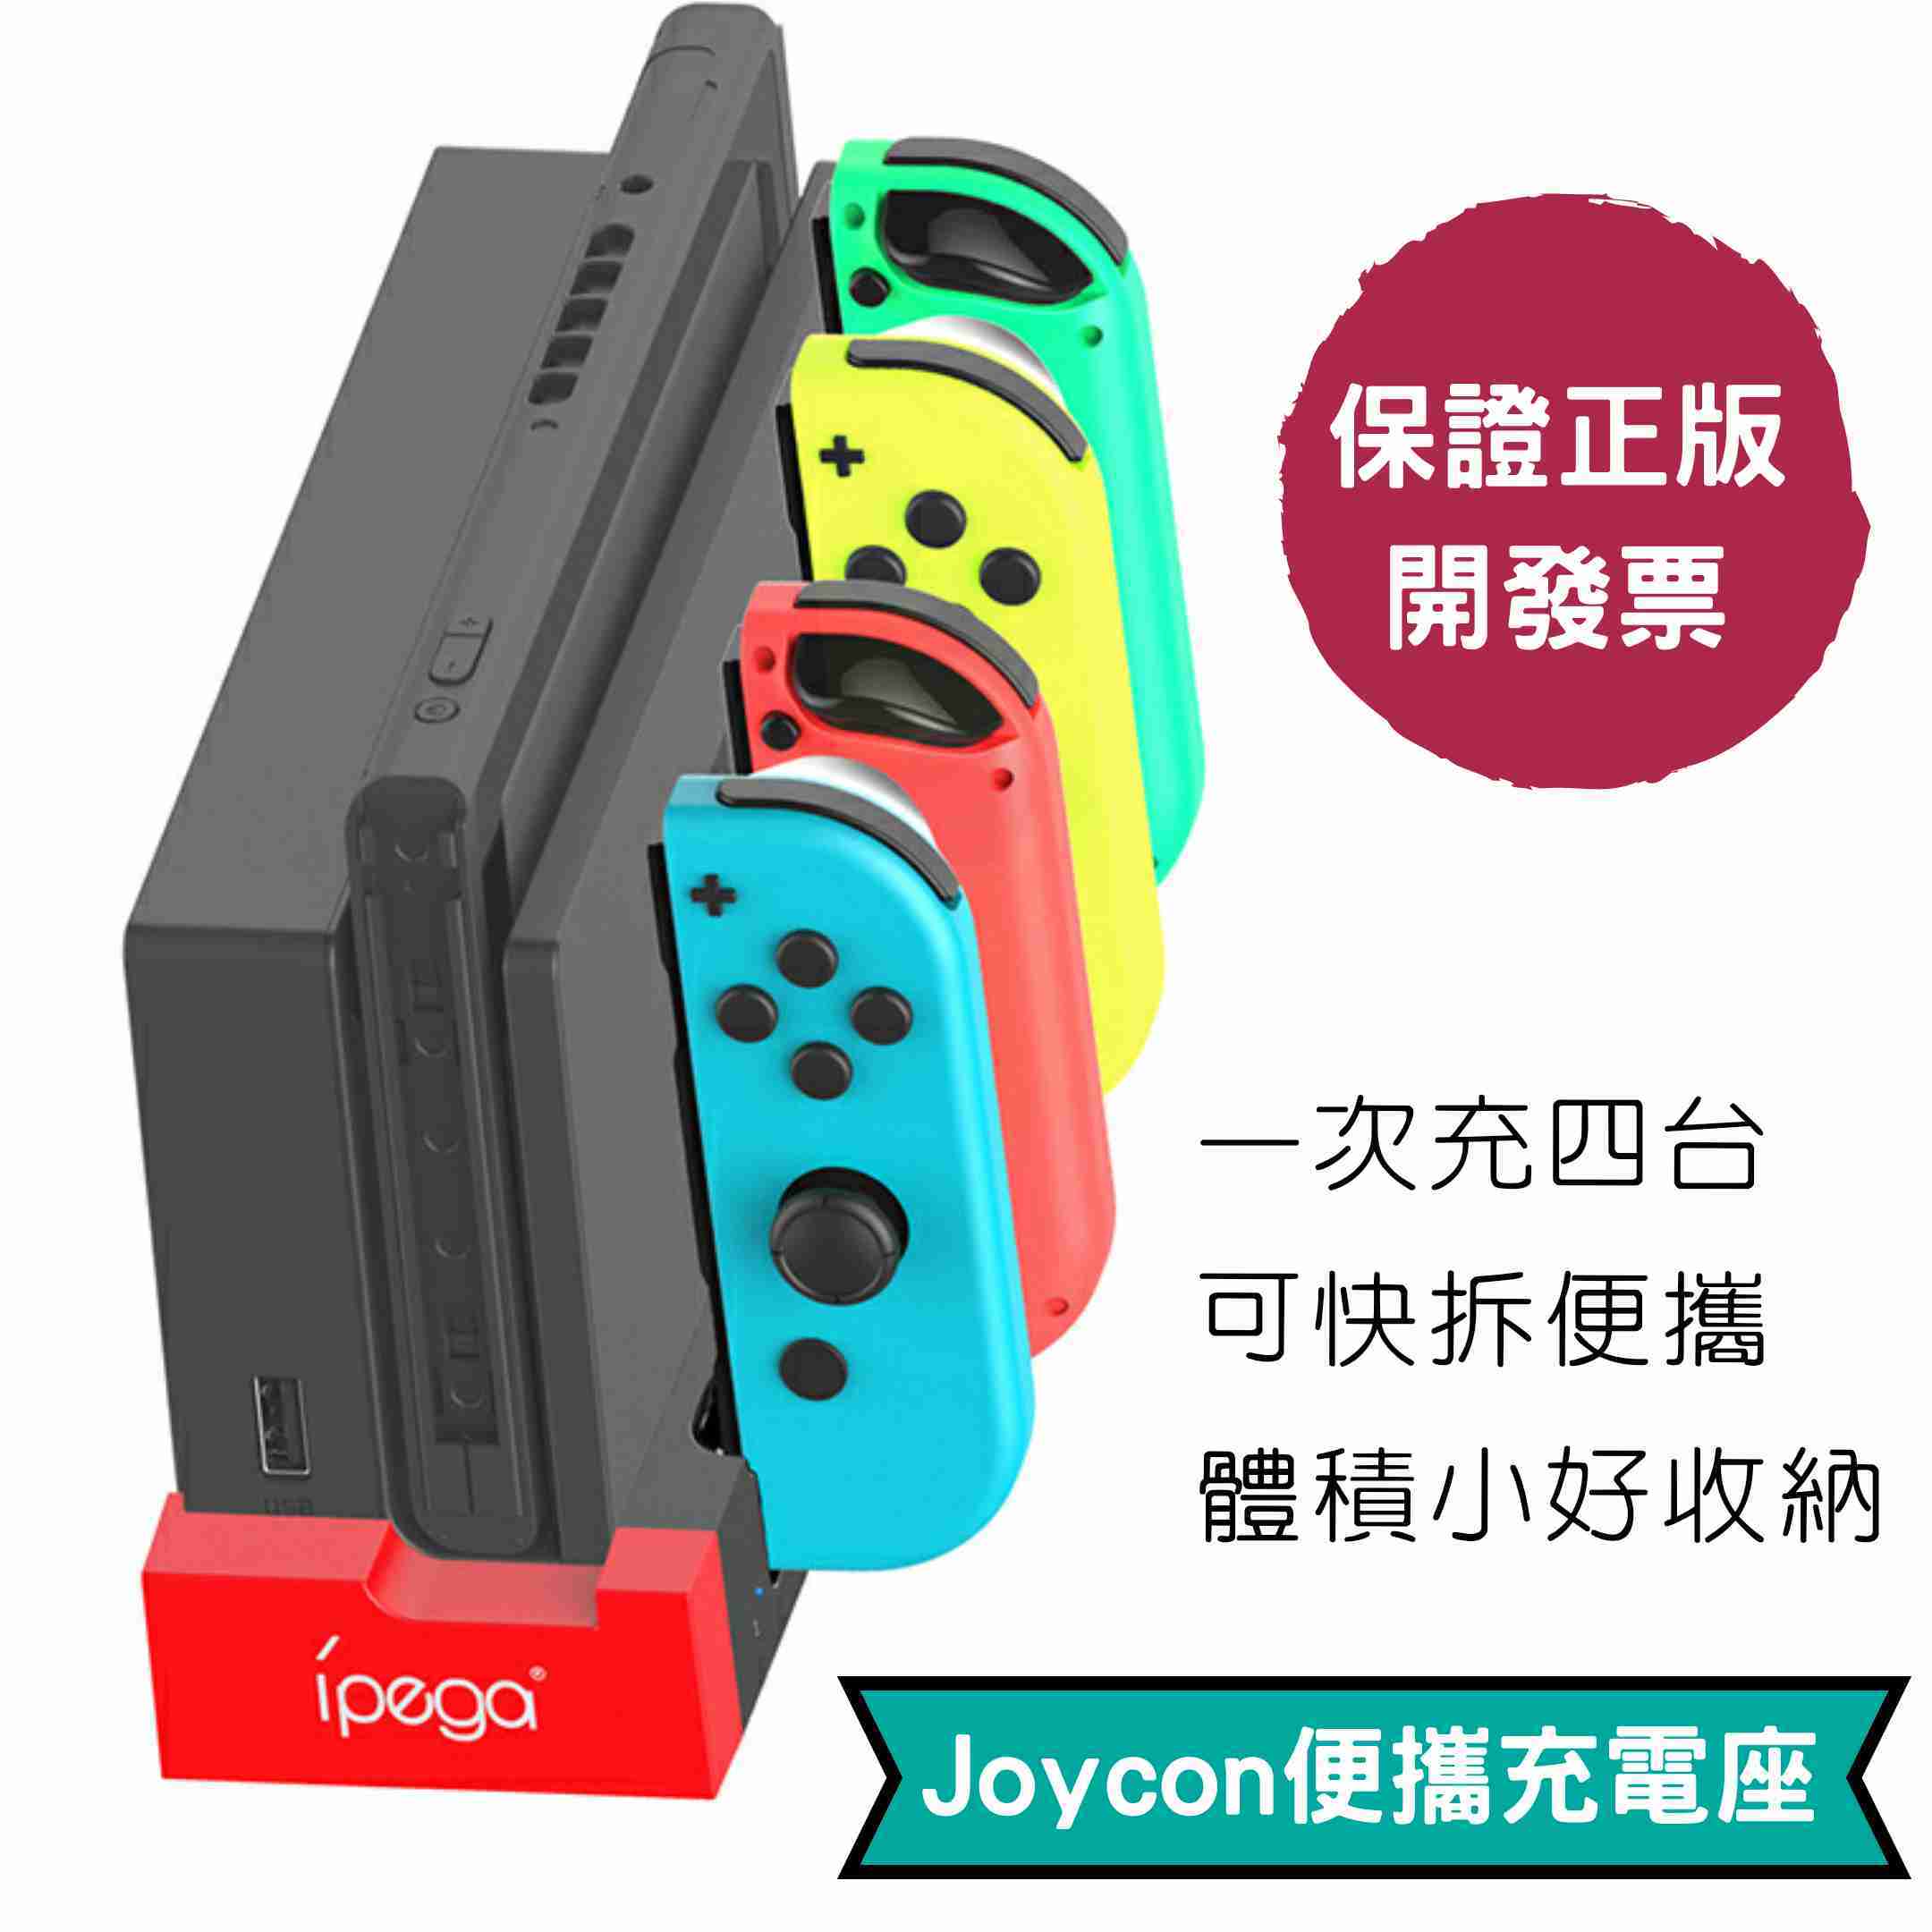 保固發票 Joycon充電座 一次充4個 Joycon搖桿充電底座switch Ns必備週邊手把收納jc充電座 Ultra Games 3c 線上購物 有閑娛樂電商